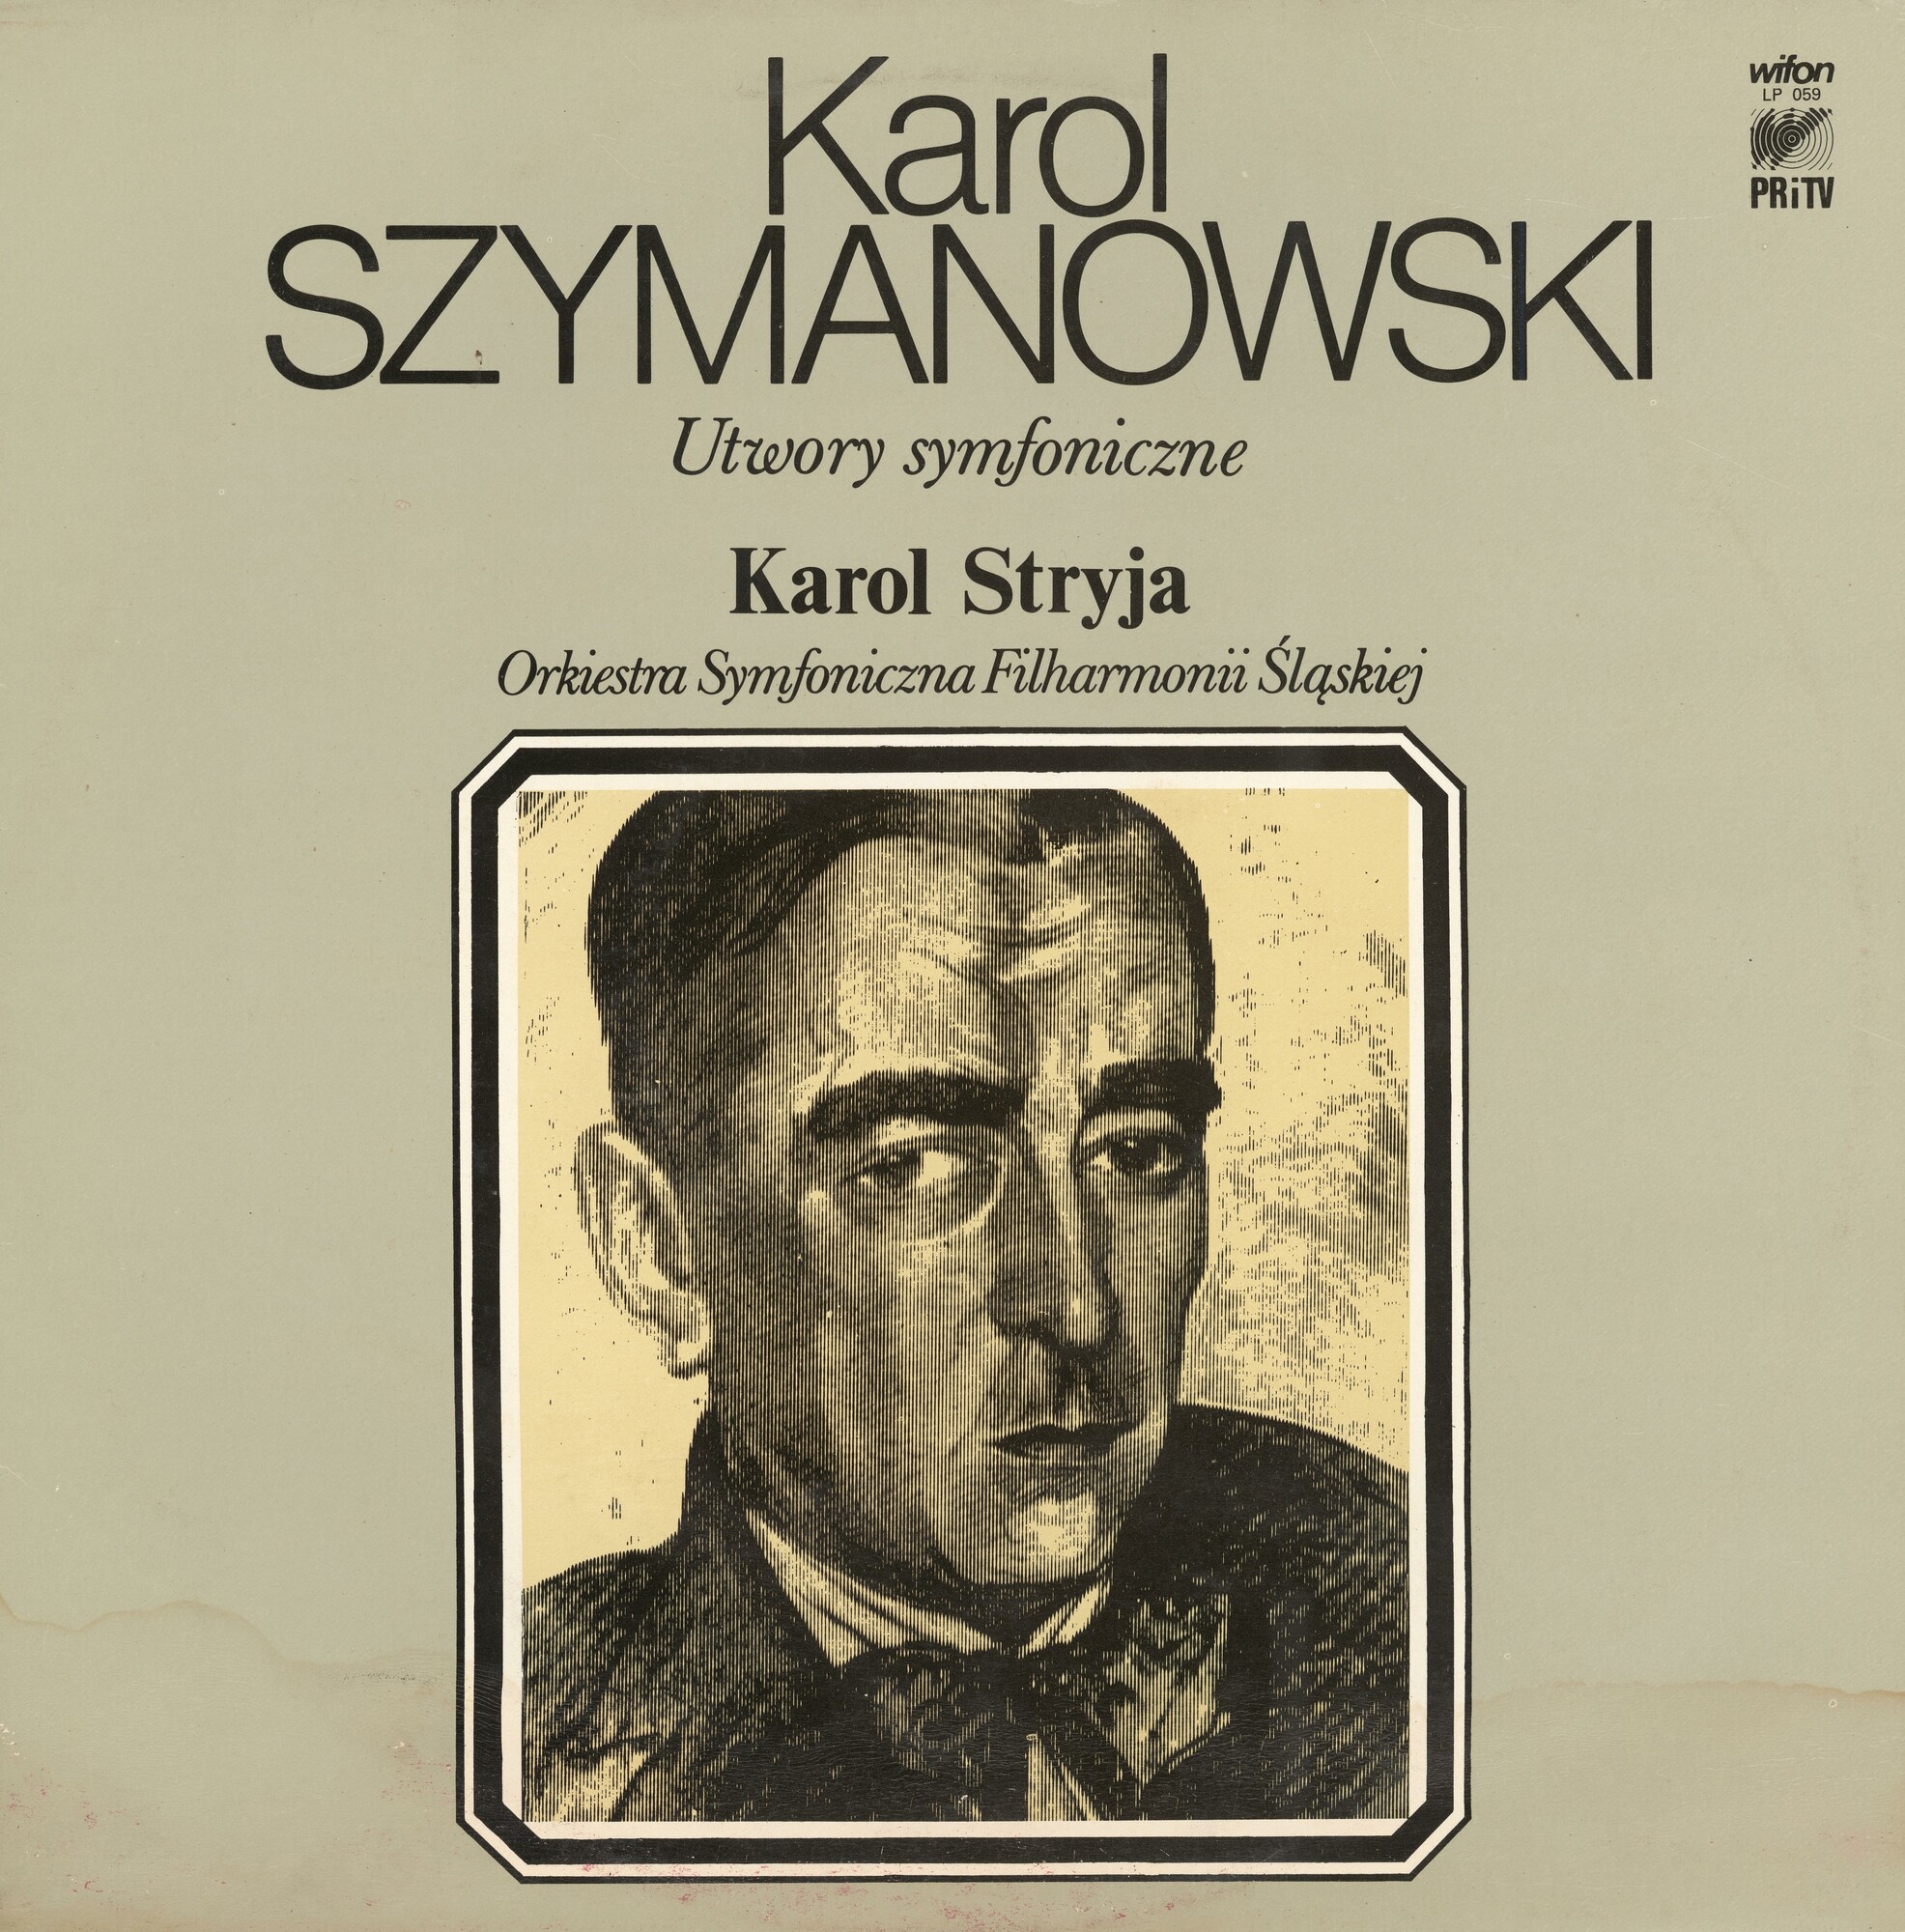 Szymanowski - Utwory symfoniczne [по заказу польской фирмы WIFON, LP 059]